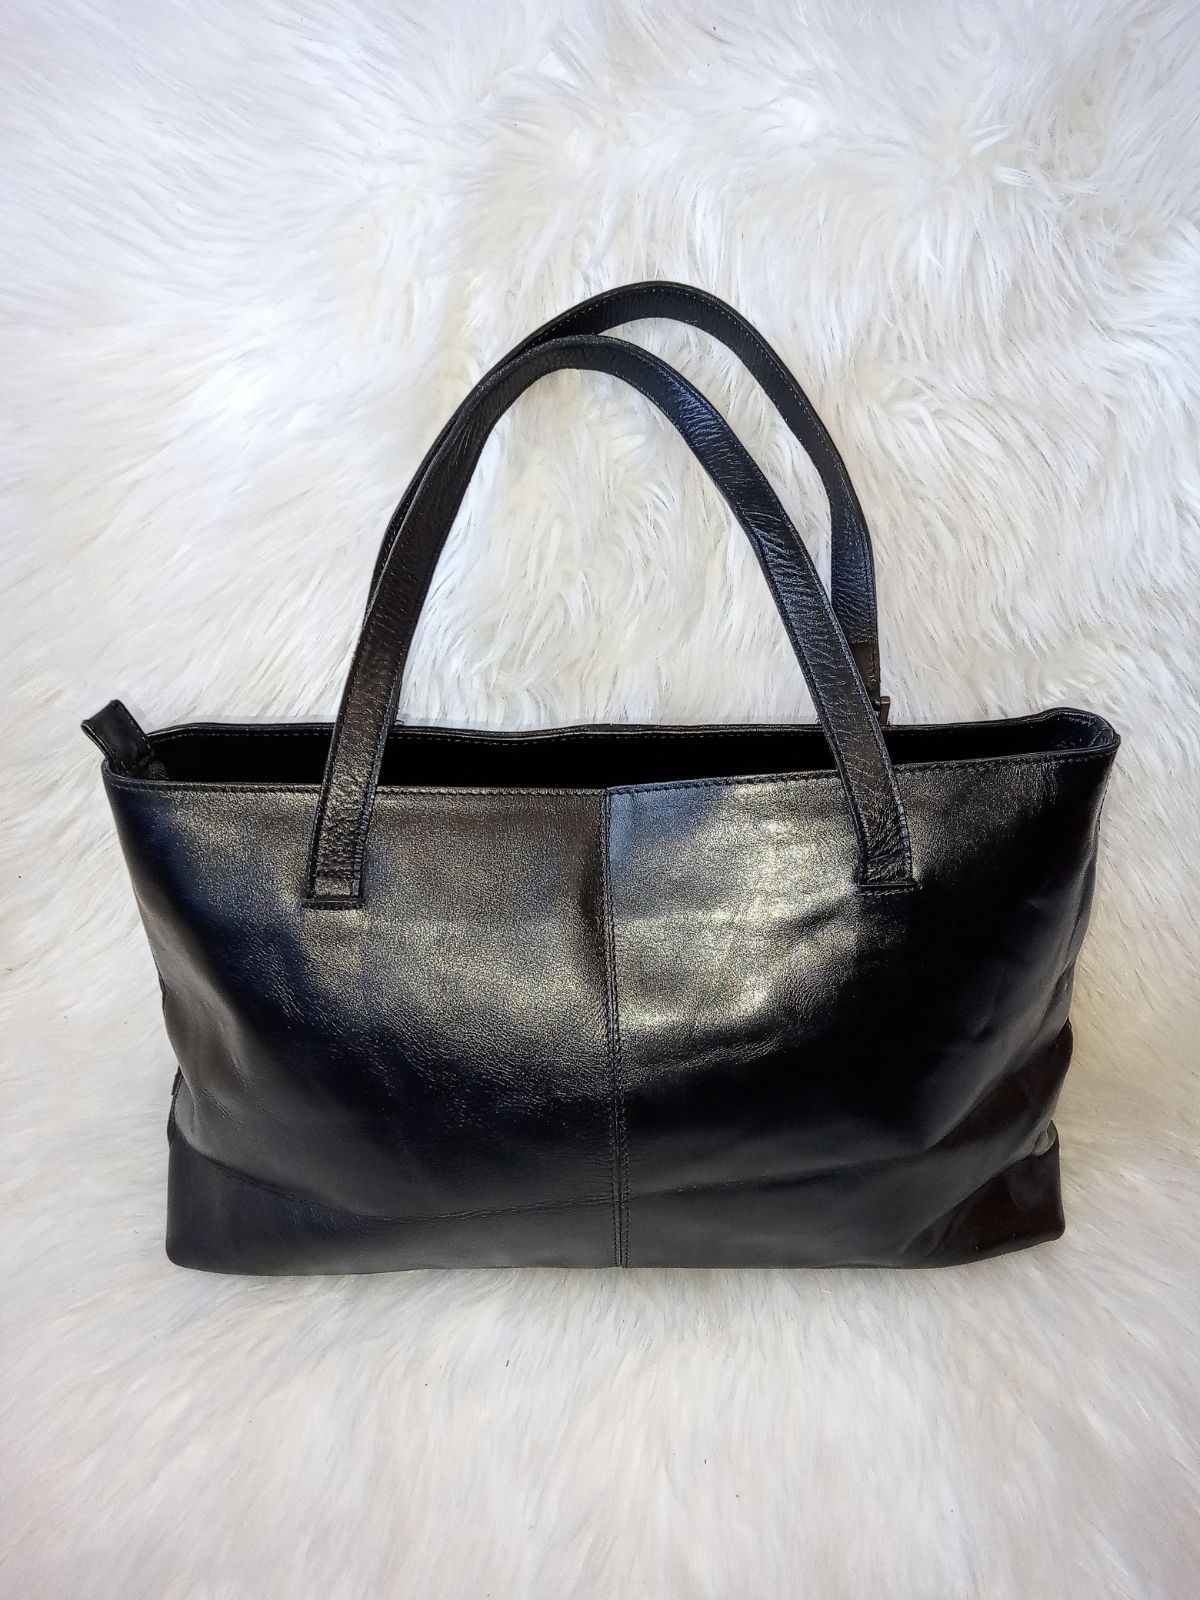 Anna Pelle Black Leather Handbag (s)